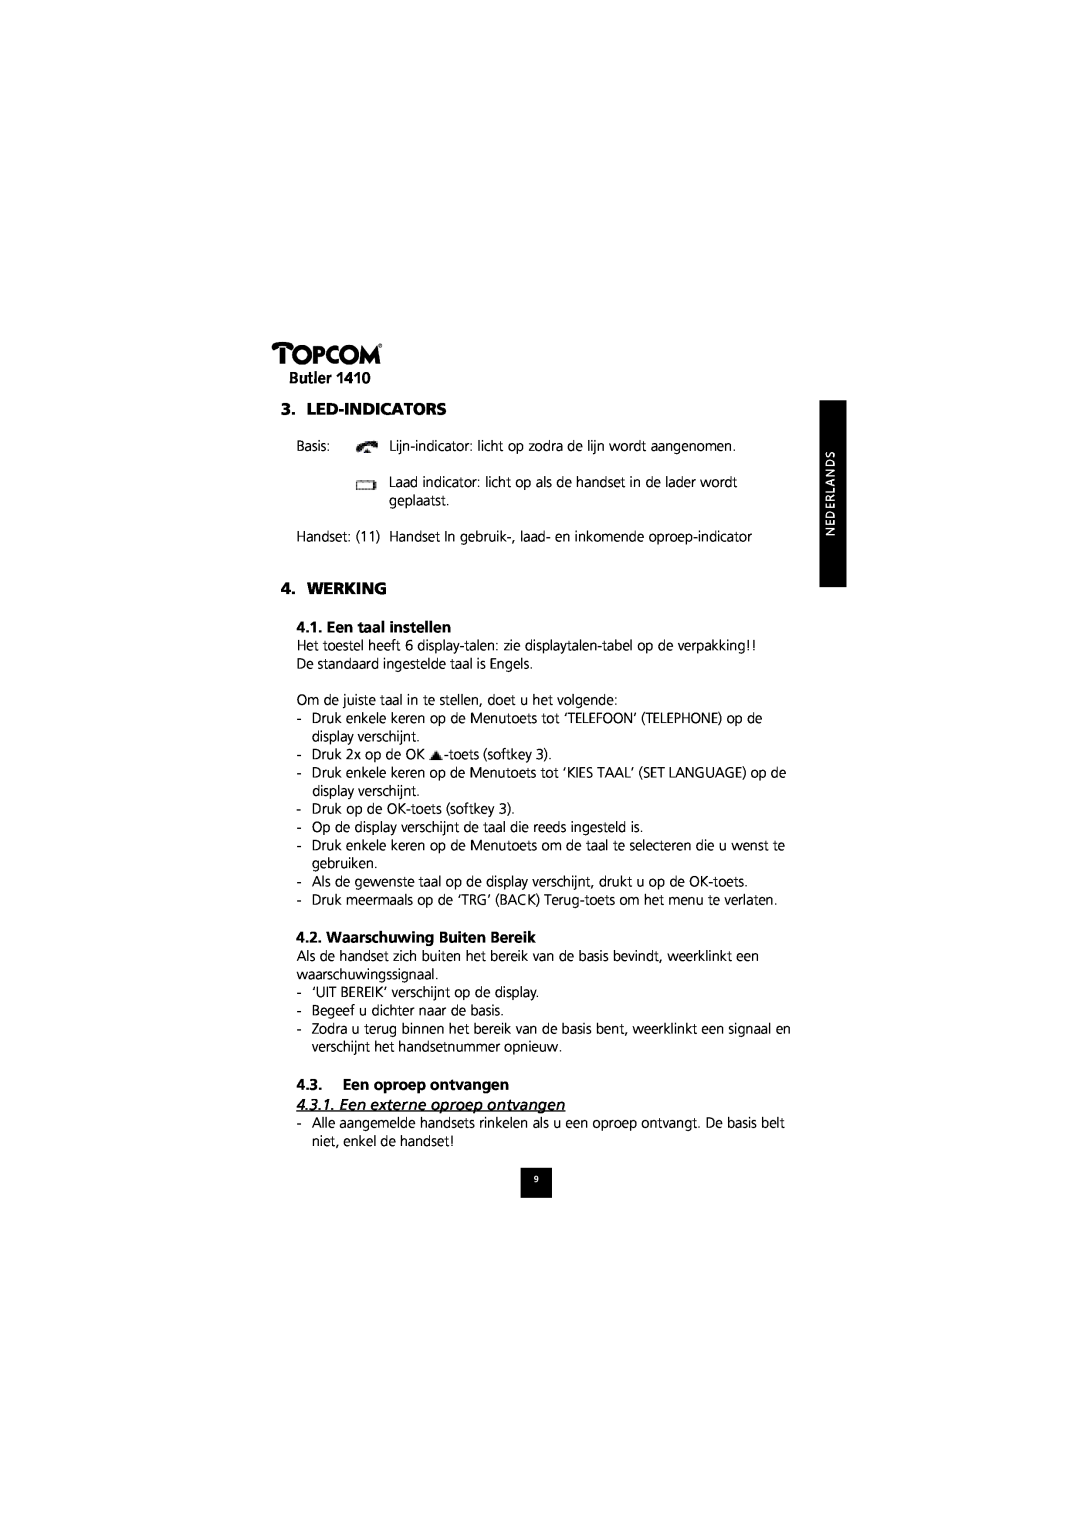 Topcom 1410 manual Butler 3. LED-INDICATORS, Werking, Een taal instellen, Waarschuwing Buiten Bereik, Een oproep ontvangen 